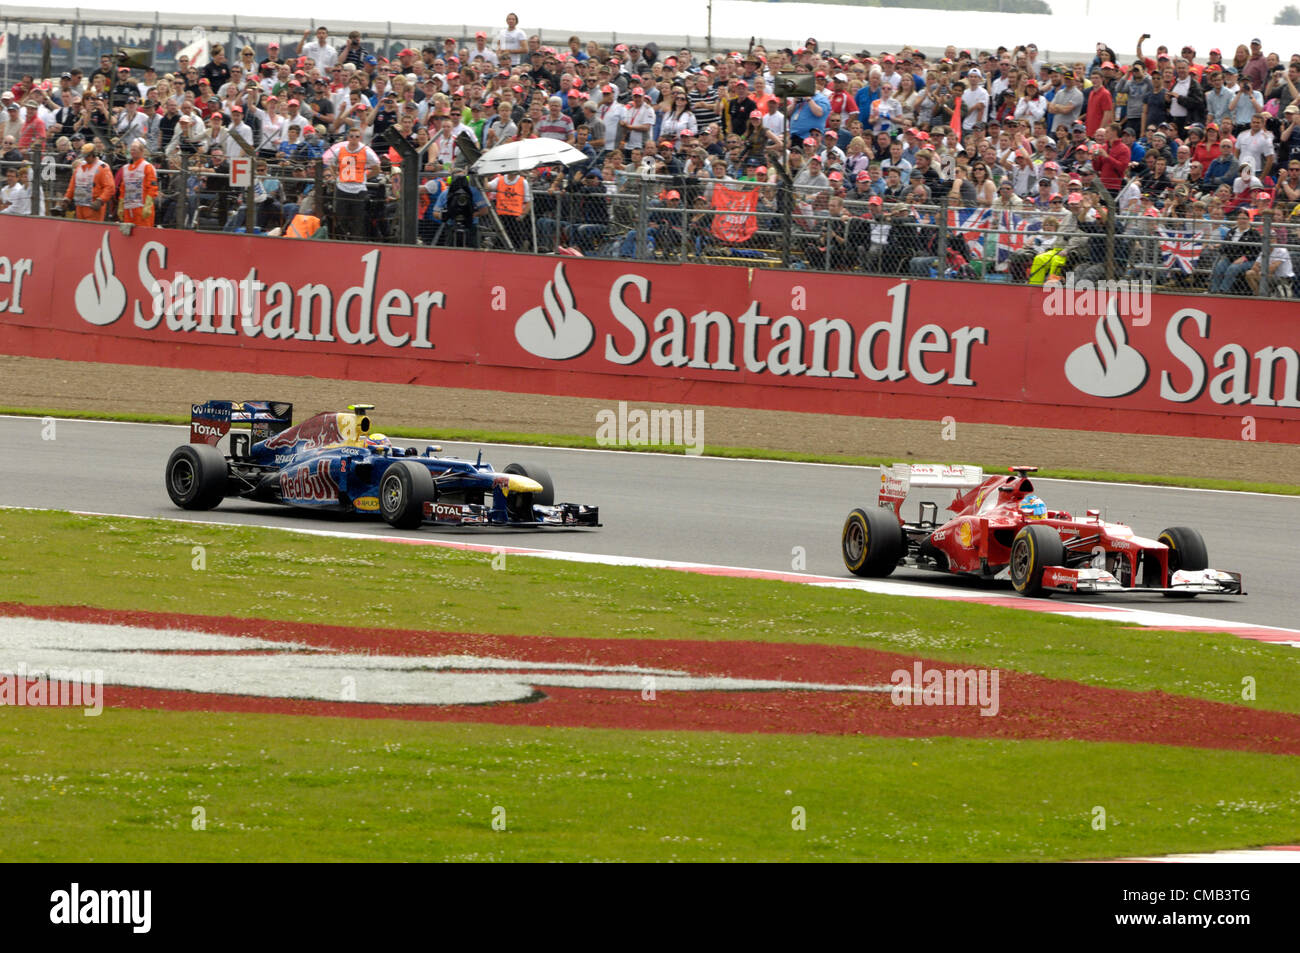 SILVERSTONE, UK, 08 juillet 2012. Mark Webber, Red Bull Racing (à gauche) a le pouvoir d'Fernando Alonso, Ferrari (à droite) dans le Grand Prix de Formule 1 britannique Banque D'Images